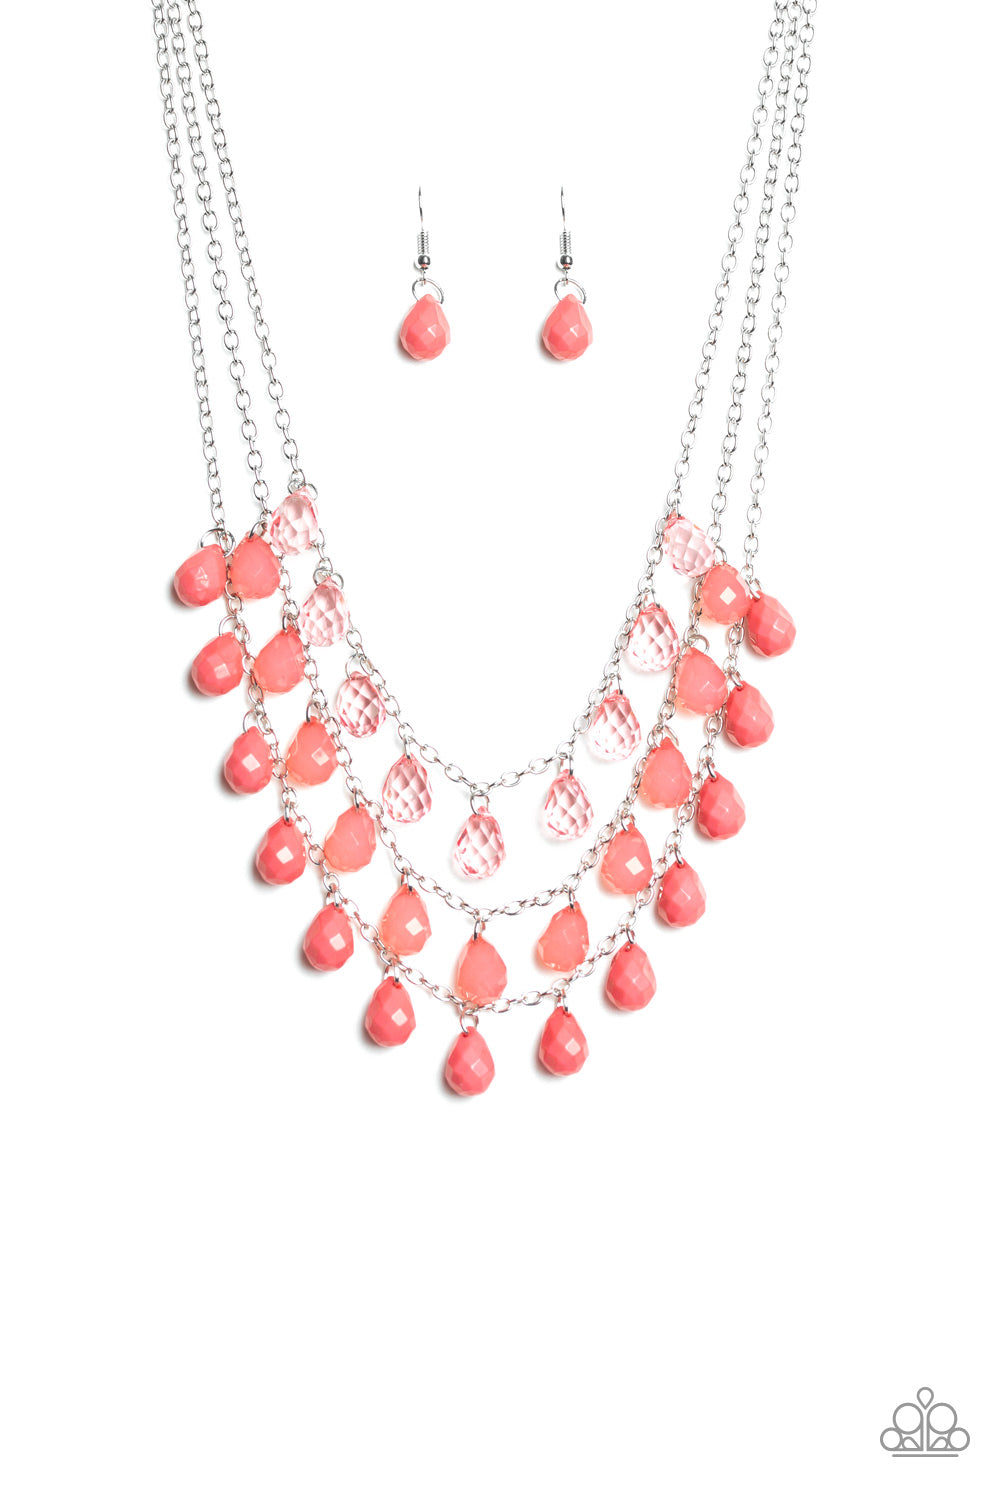 Melting Ice Caps Pink Paparazzi Necklaces Cashmere Pink Jewels - Cashmere Pink Jewels & Accessories, Cashmere Pink Jewels & Accessories - Paparazzi